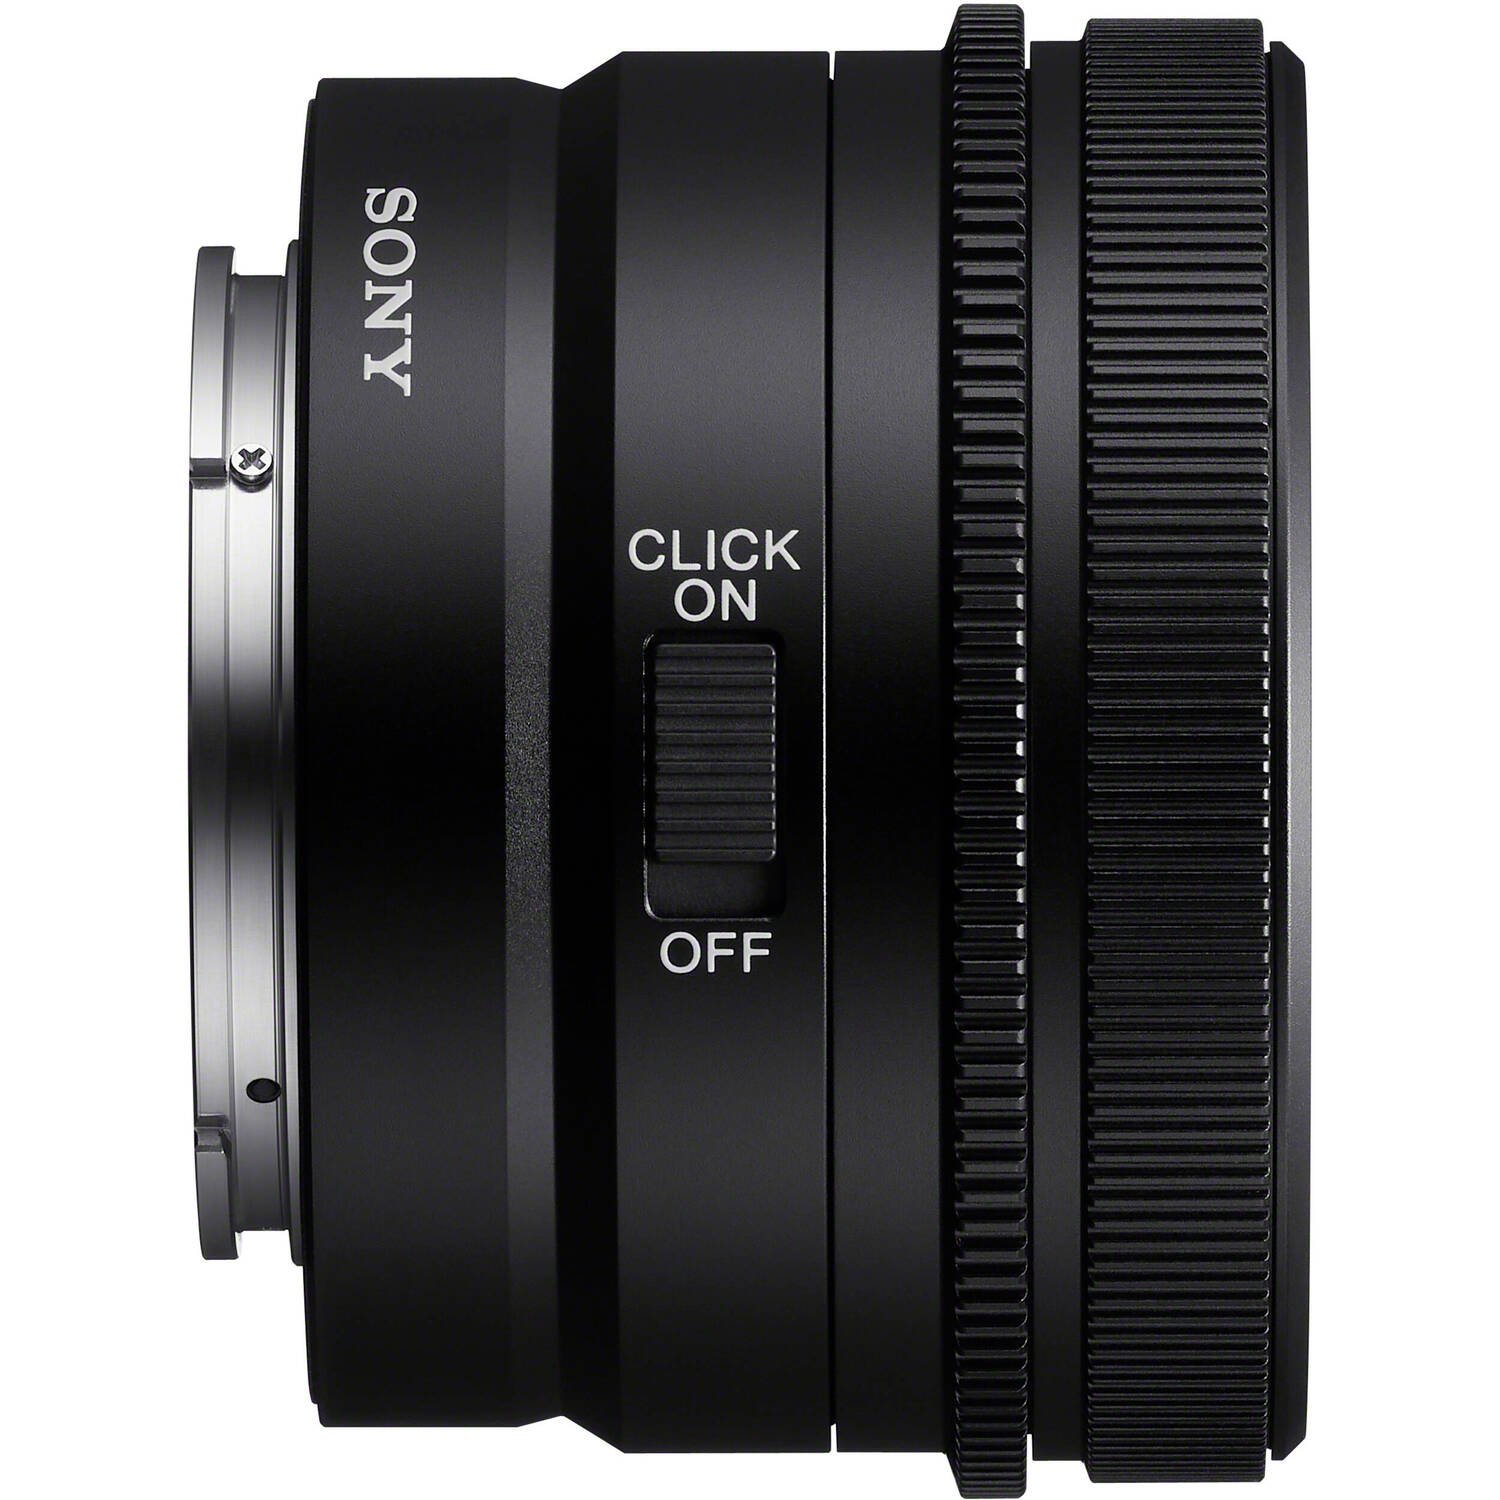 Объектив Sony FE 24 mm f/2.8 G (SEL24F28G.SYX)